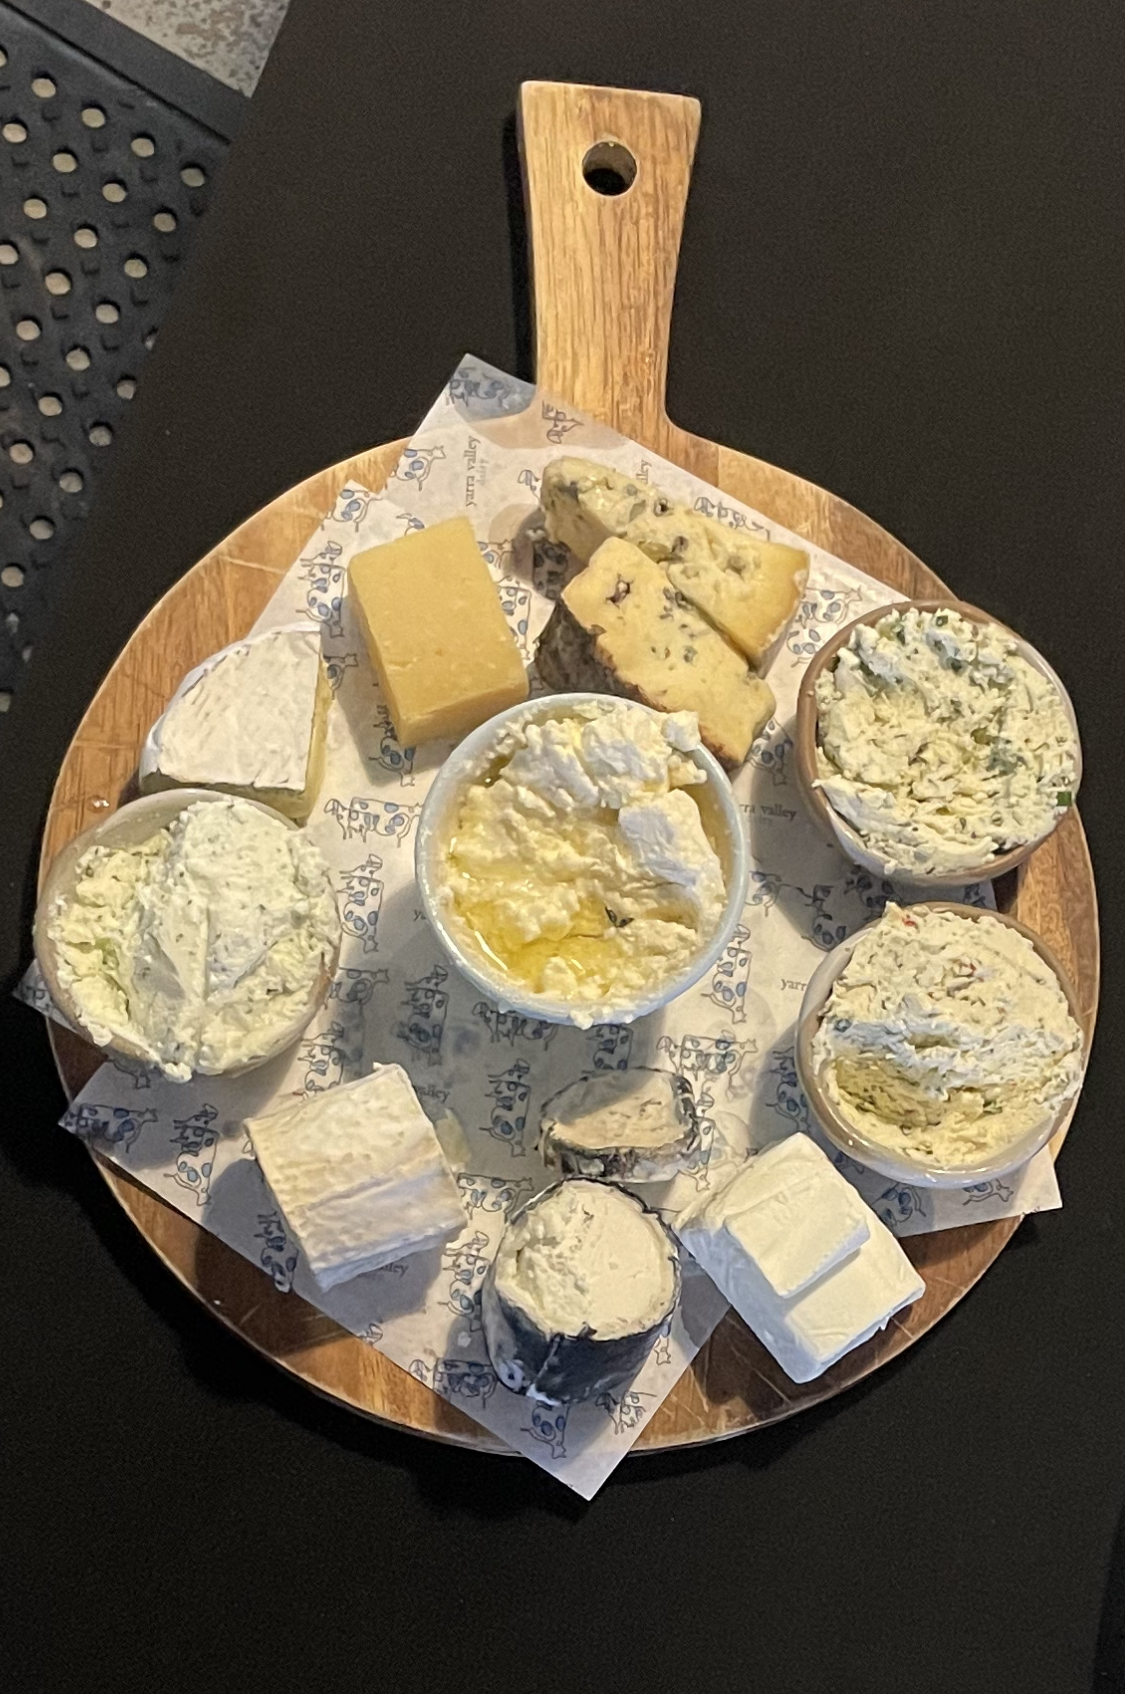 Cheese tastings at Yarra Valley Dairy